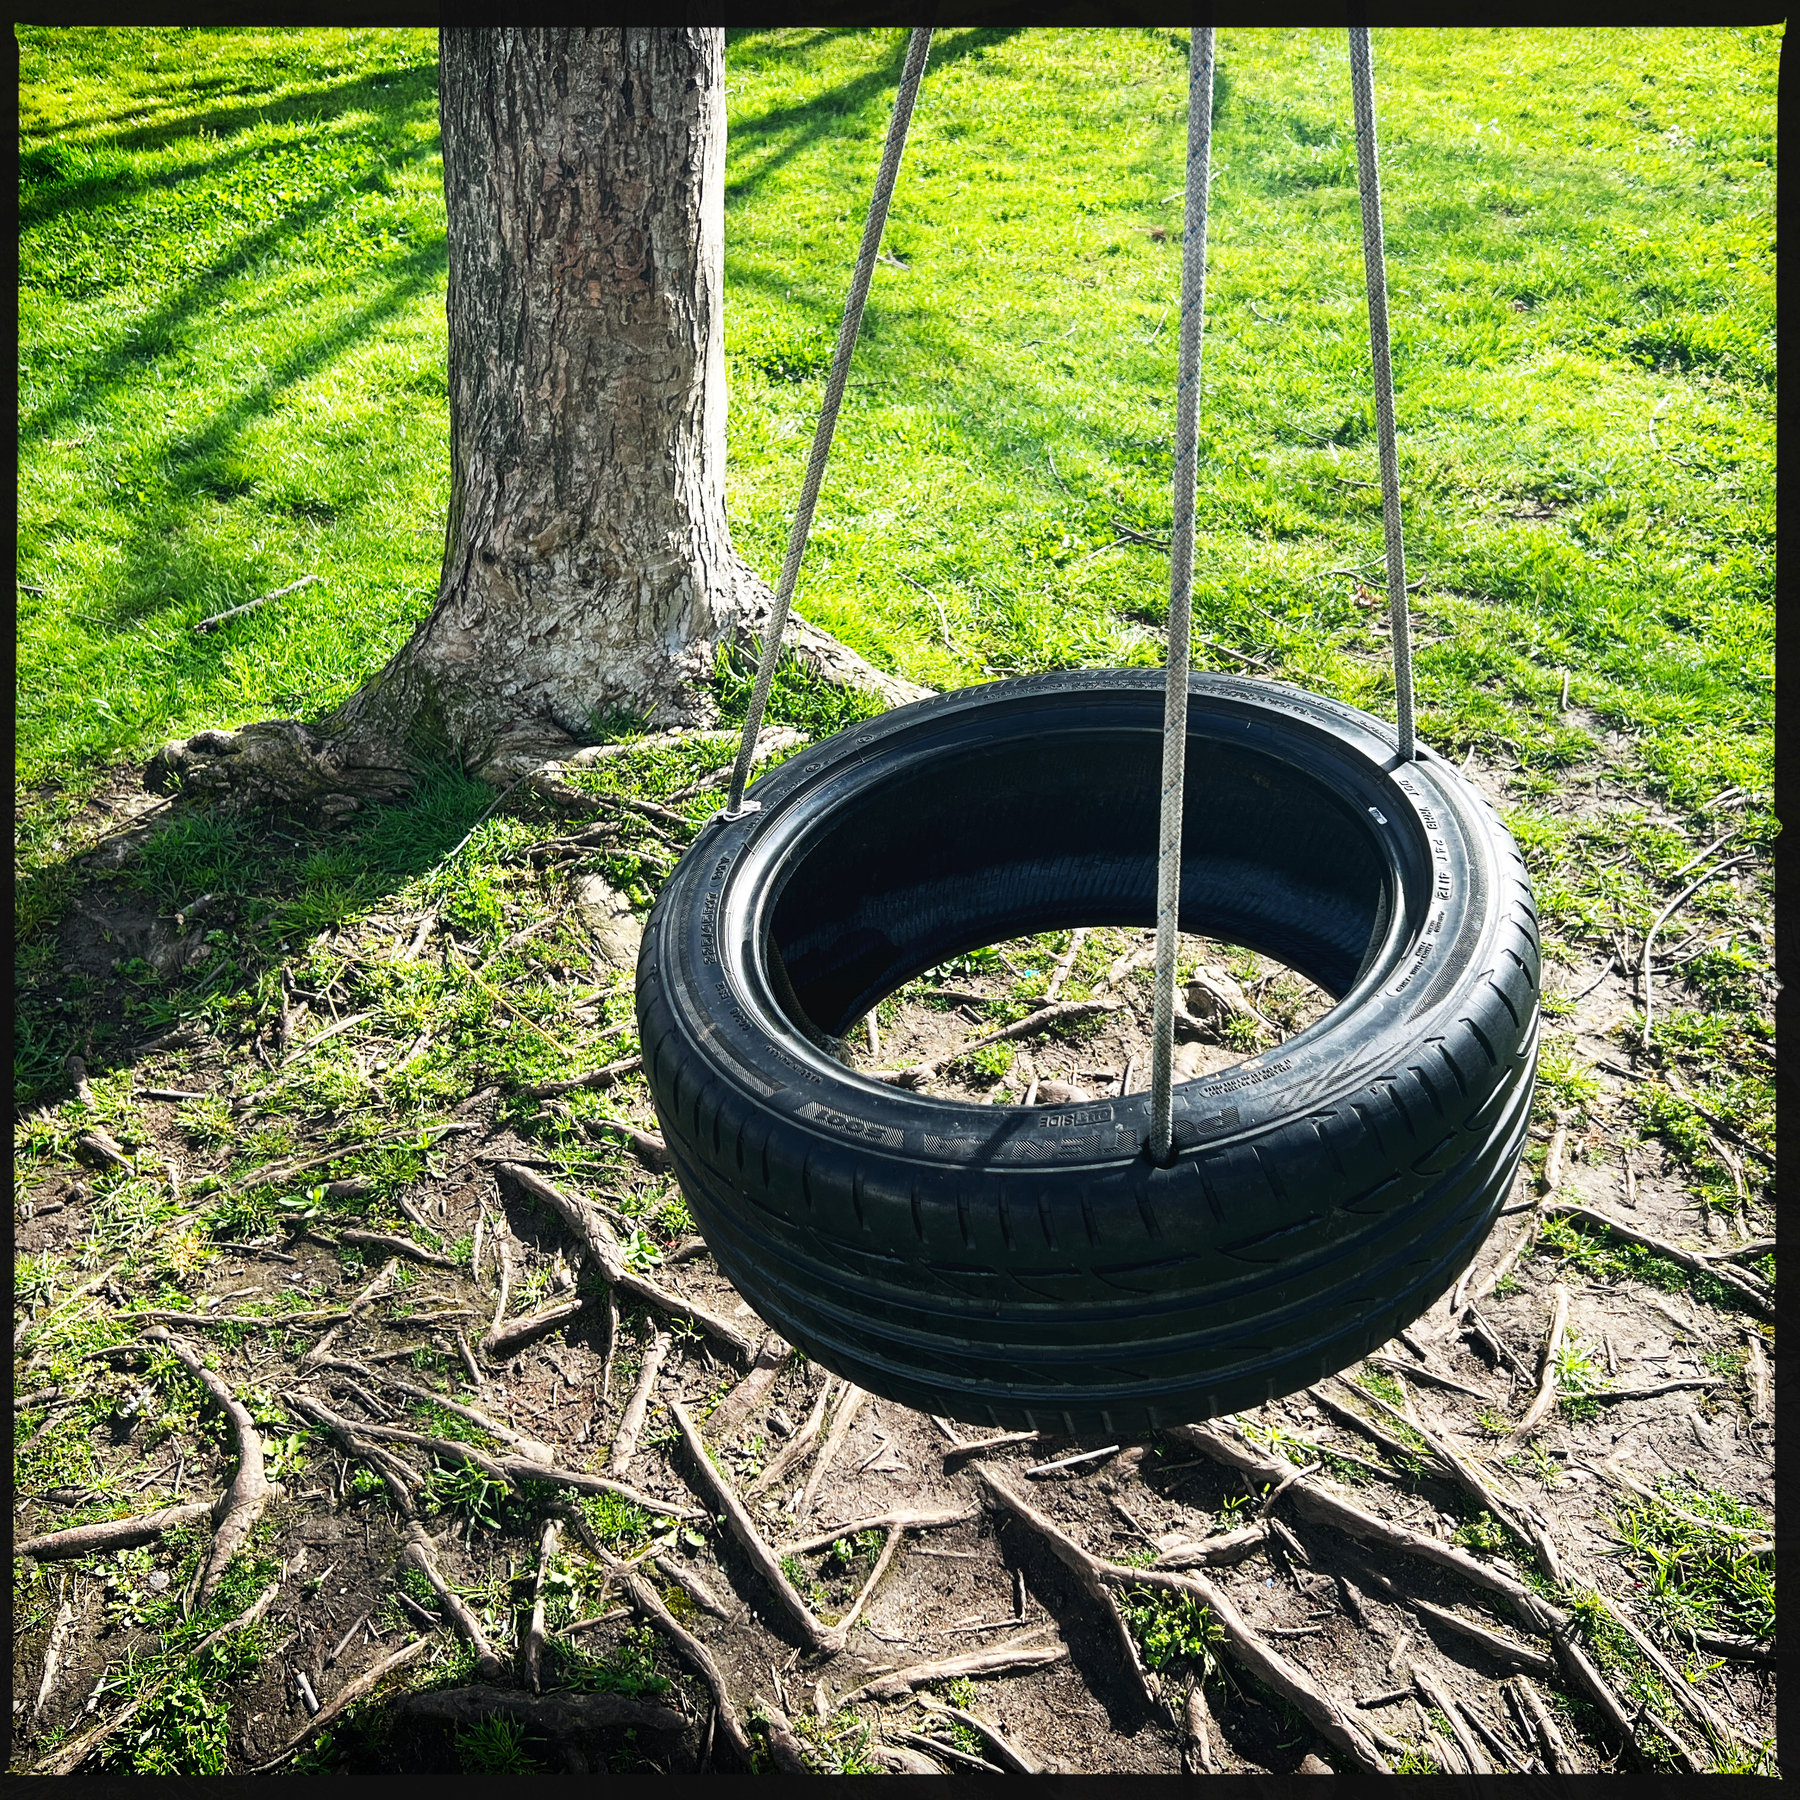 A tire swing.